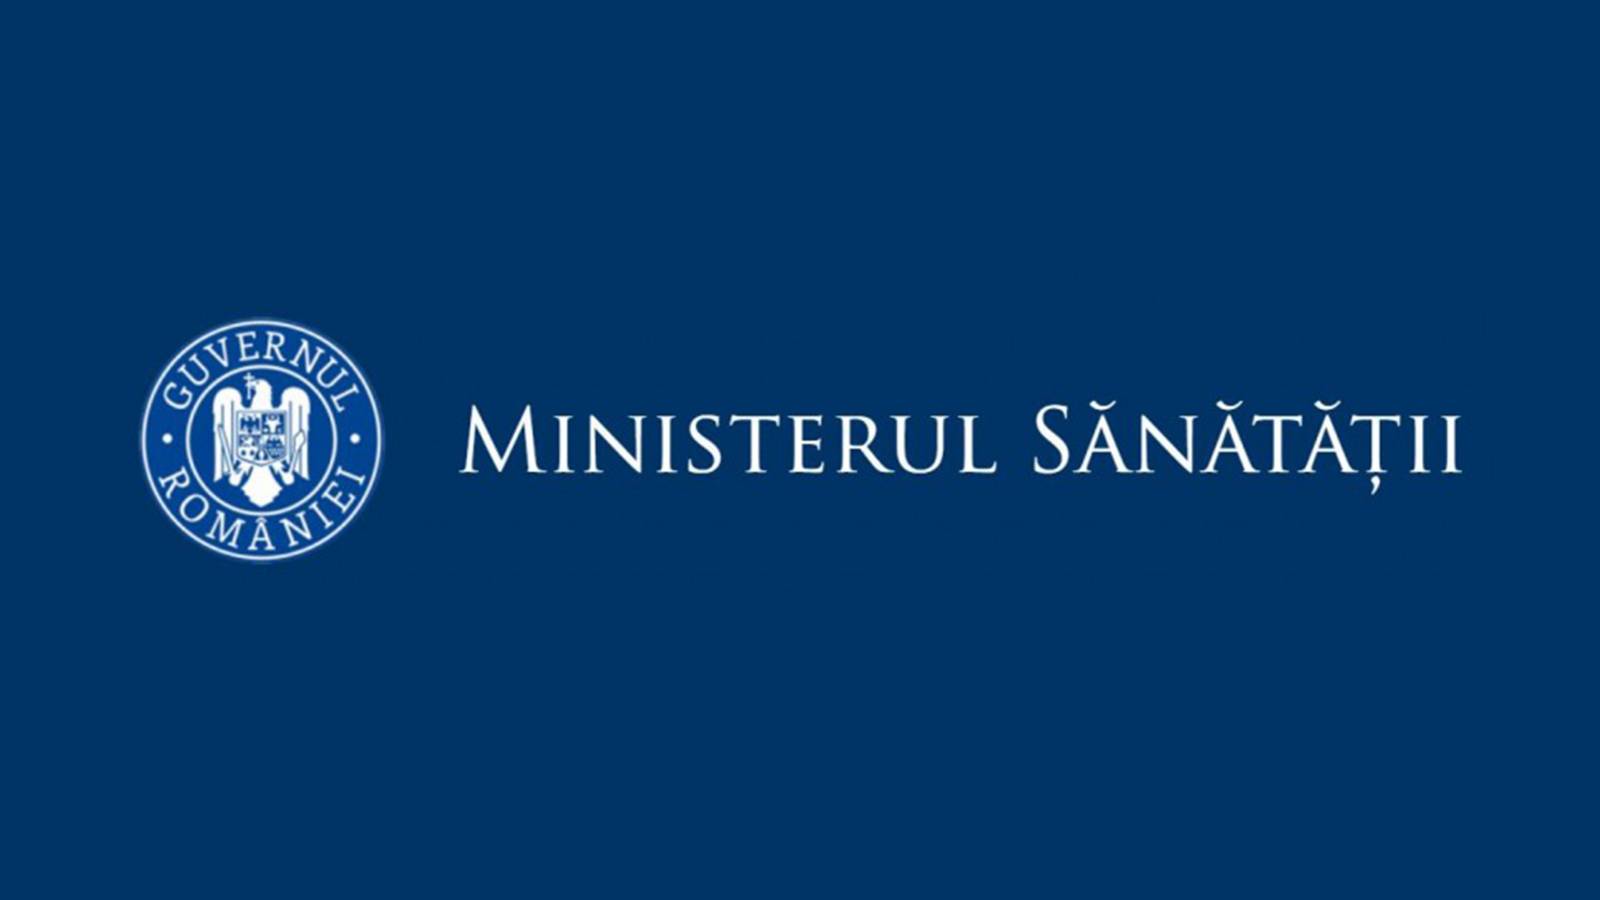 Ministerul Sanatatii Cresterea Ratelor de Incidenta Judete 21 Octombrie 2021